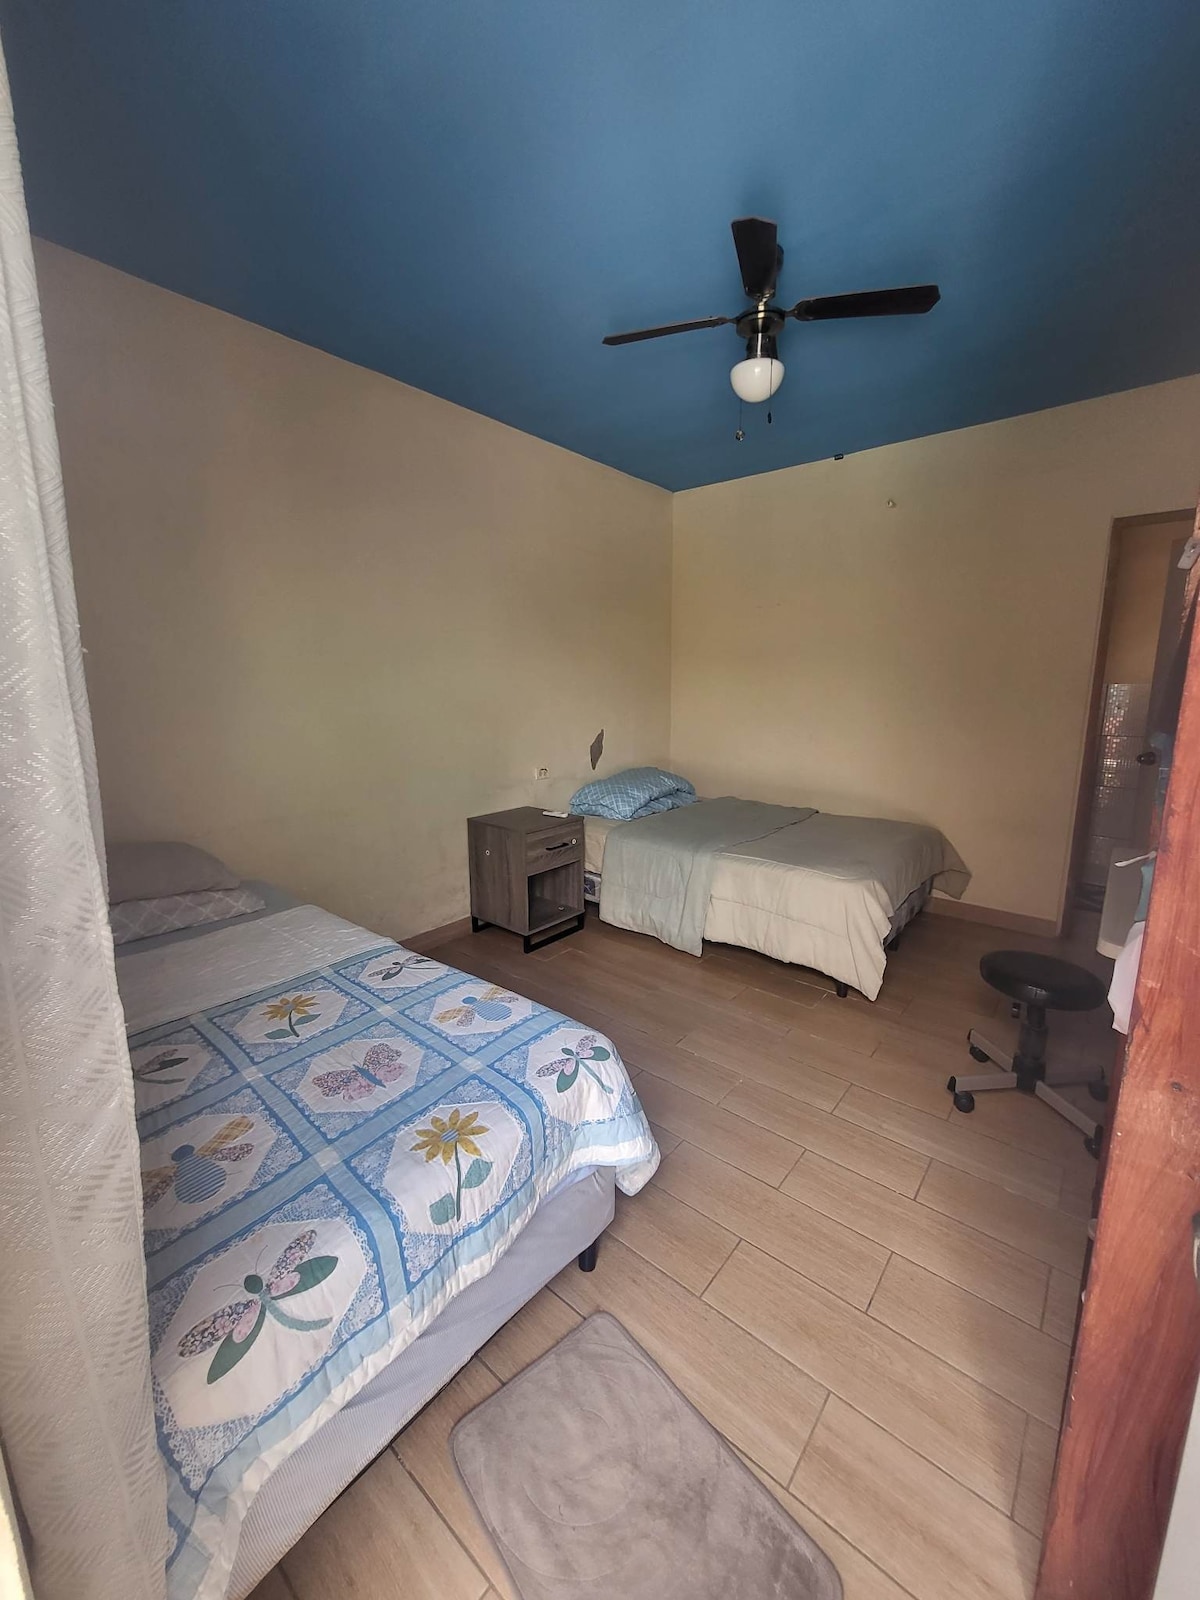 Rooms in Managua